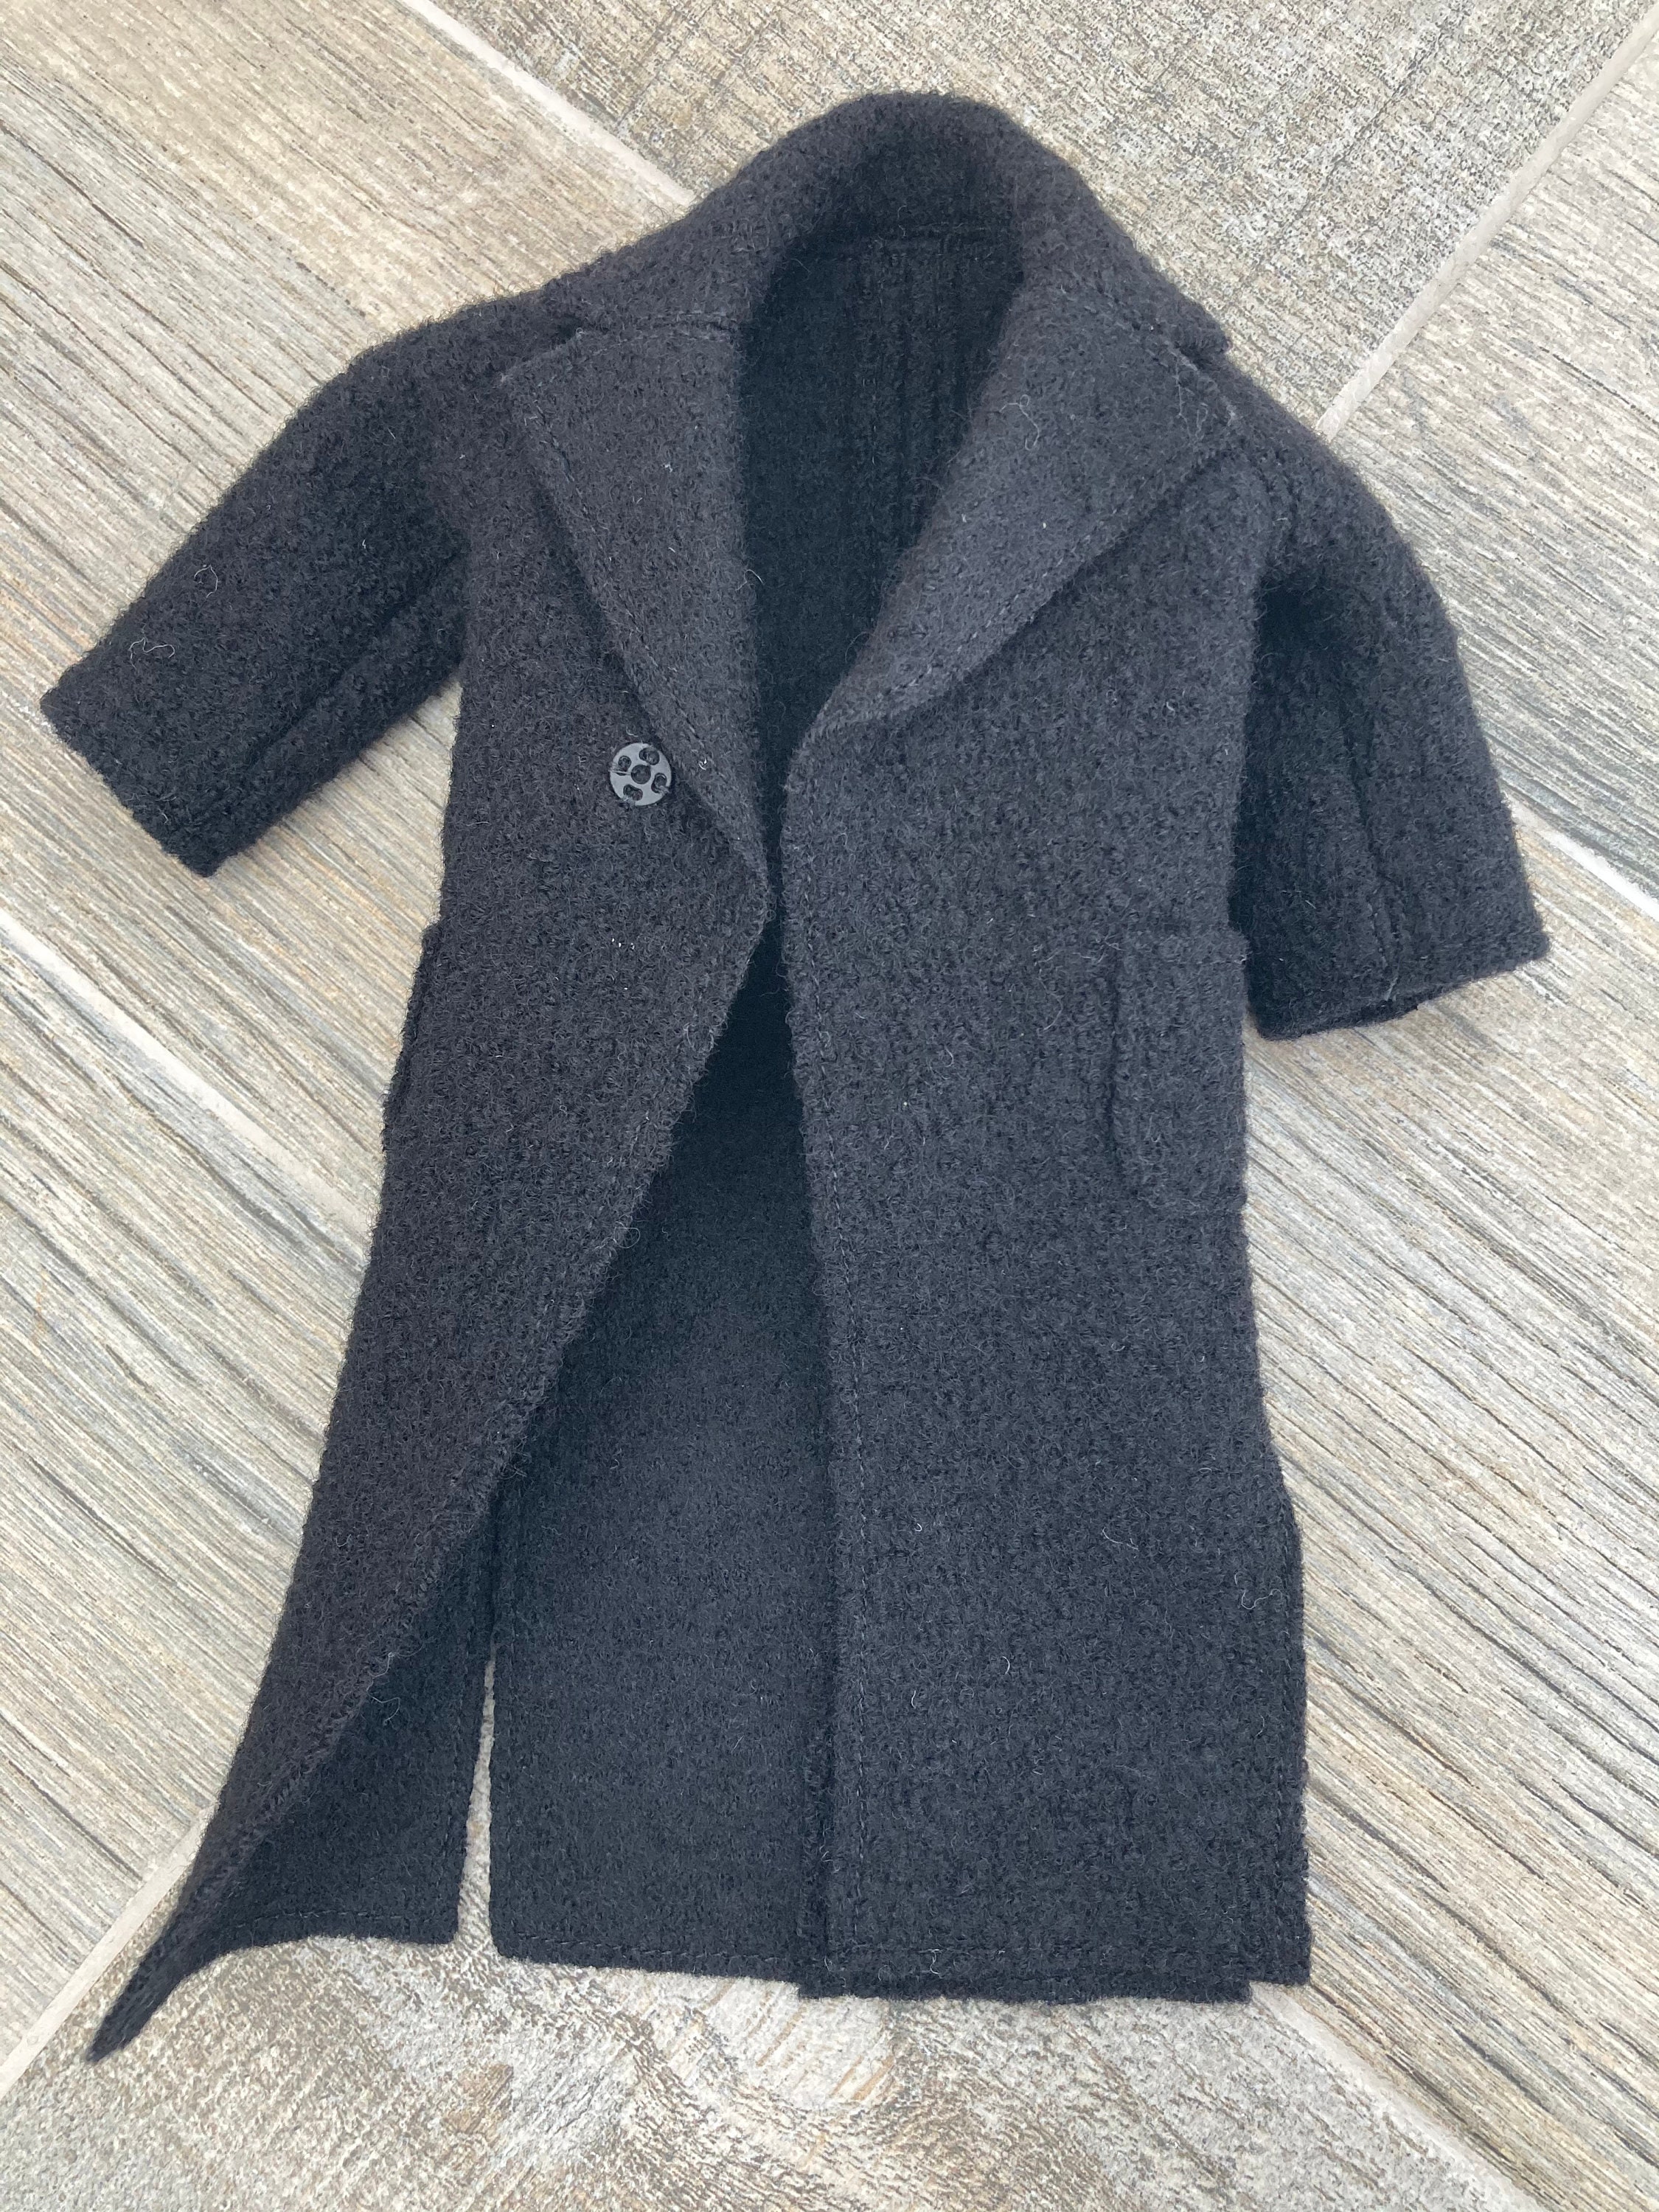 Wool Coat for Ken Doll | Etsy